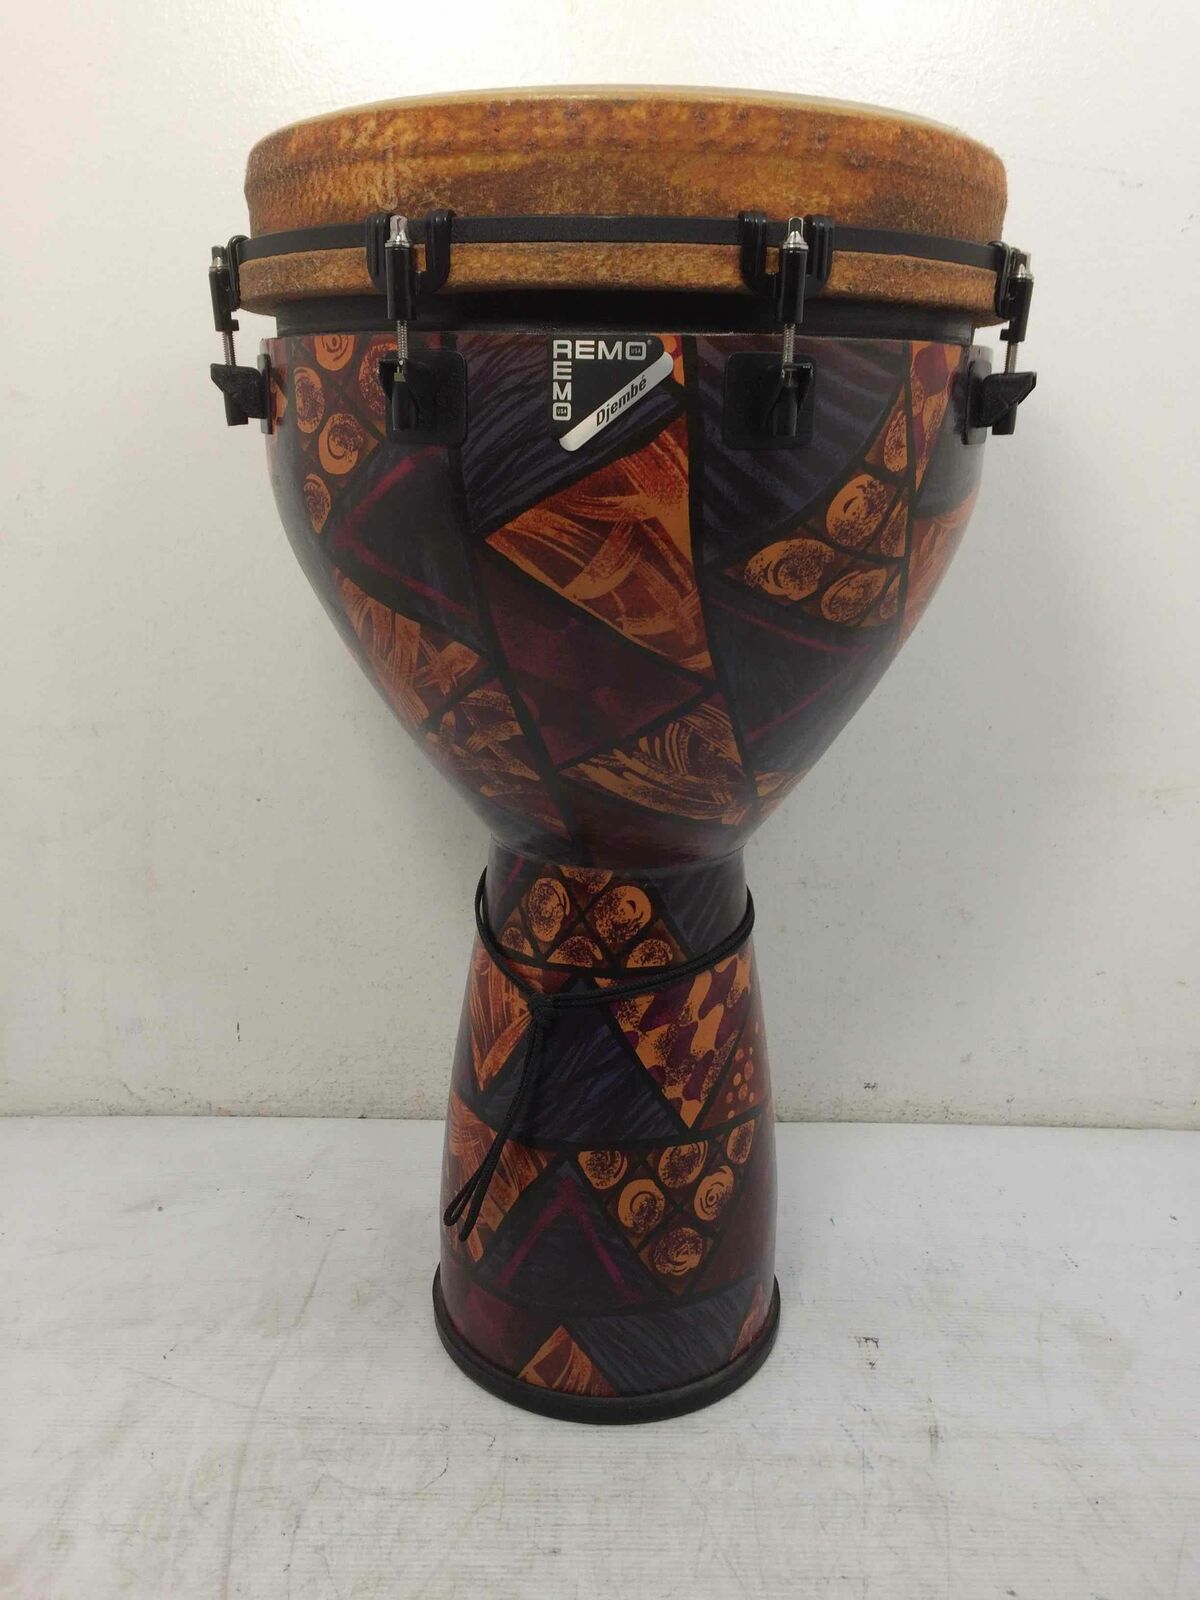 Remo Fiber Skyn 3 Mondo Mo Fa Head Djembe Drum Percussion Musical Instrument